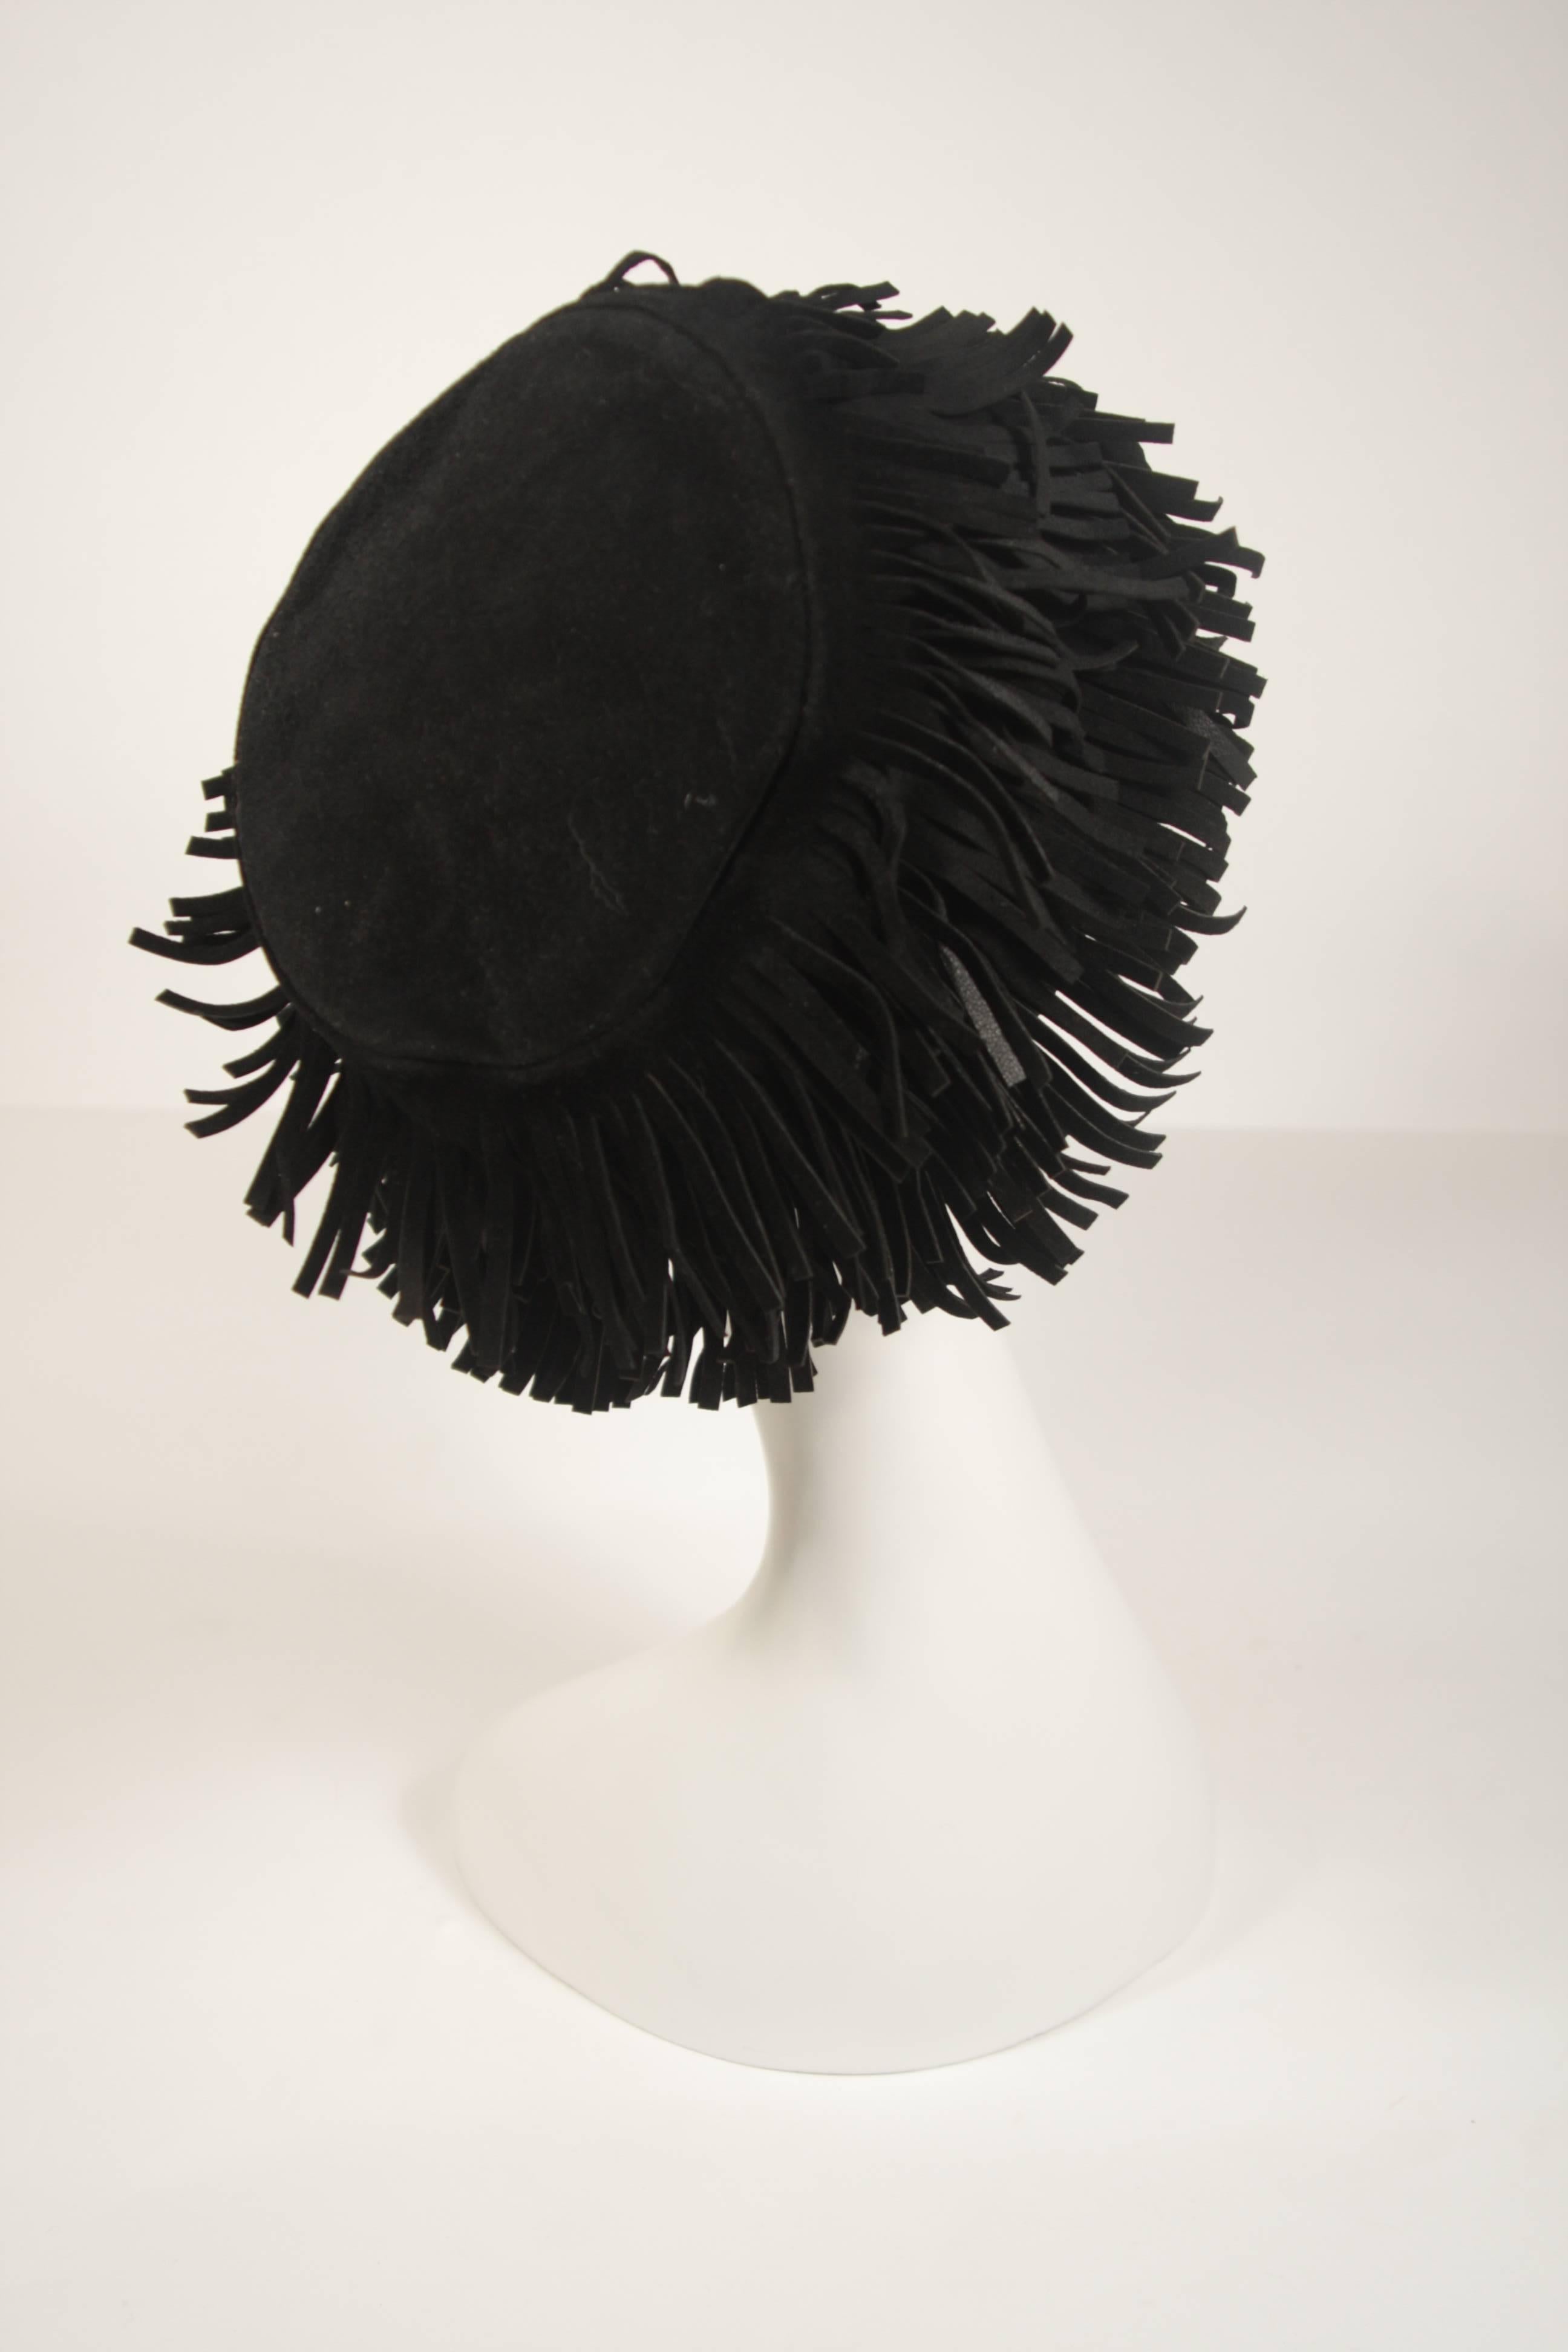 YVES SAINT LAURENT RIVE GAUCHE Black Suede Fringe Hat Size 58 2